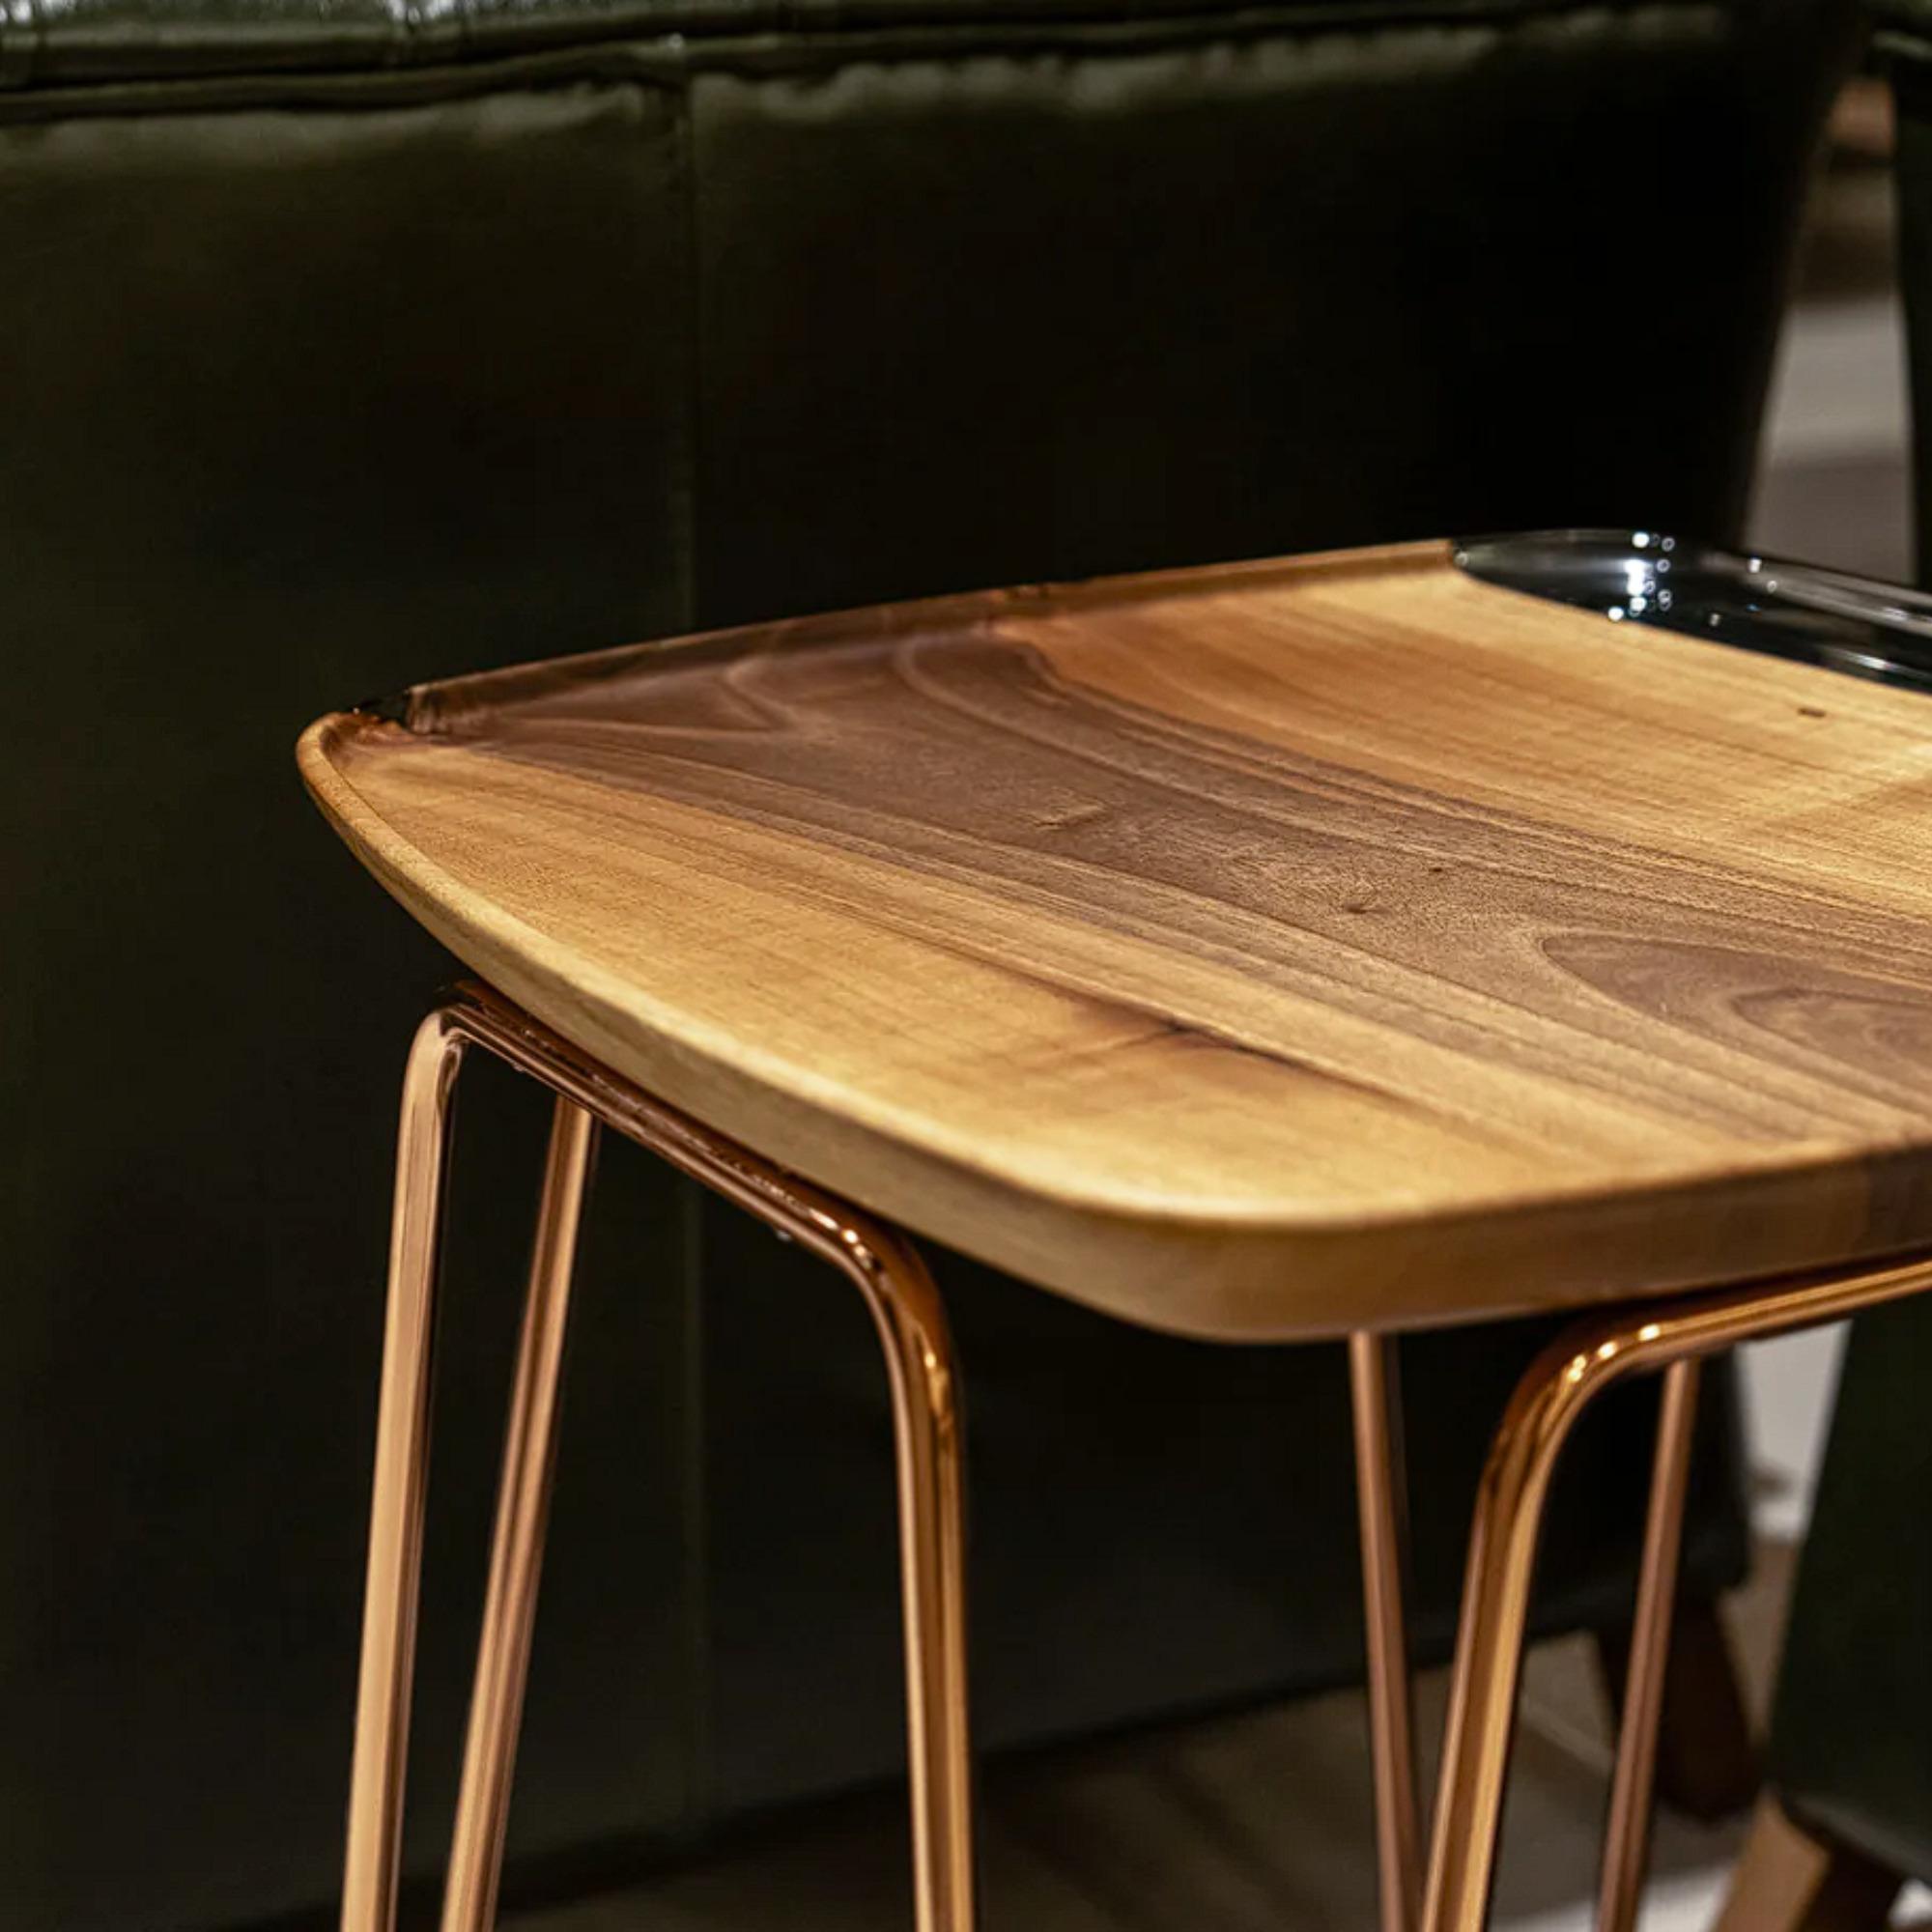 Der Beistelltisch Avorio ist ein wunderschönes Möbelstück, das mit viel Liebe zum Detail handgefertigt wird. Aus hochwertigem anatolischen Nussbaumholz gefertigt, ist dieser Tisch nicht nur elegant, sondern auch langlebig. Die kristallklare